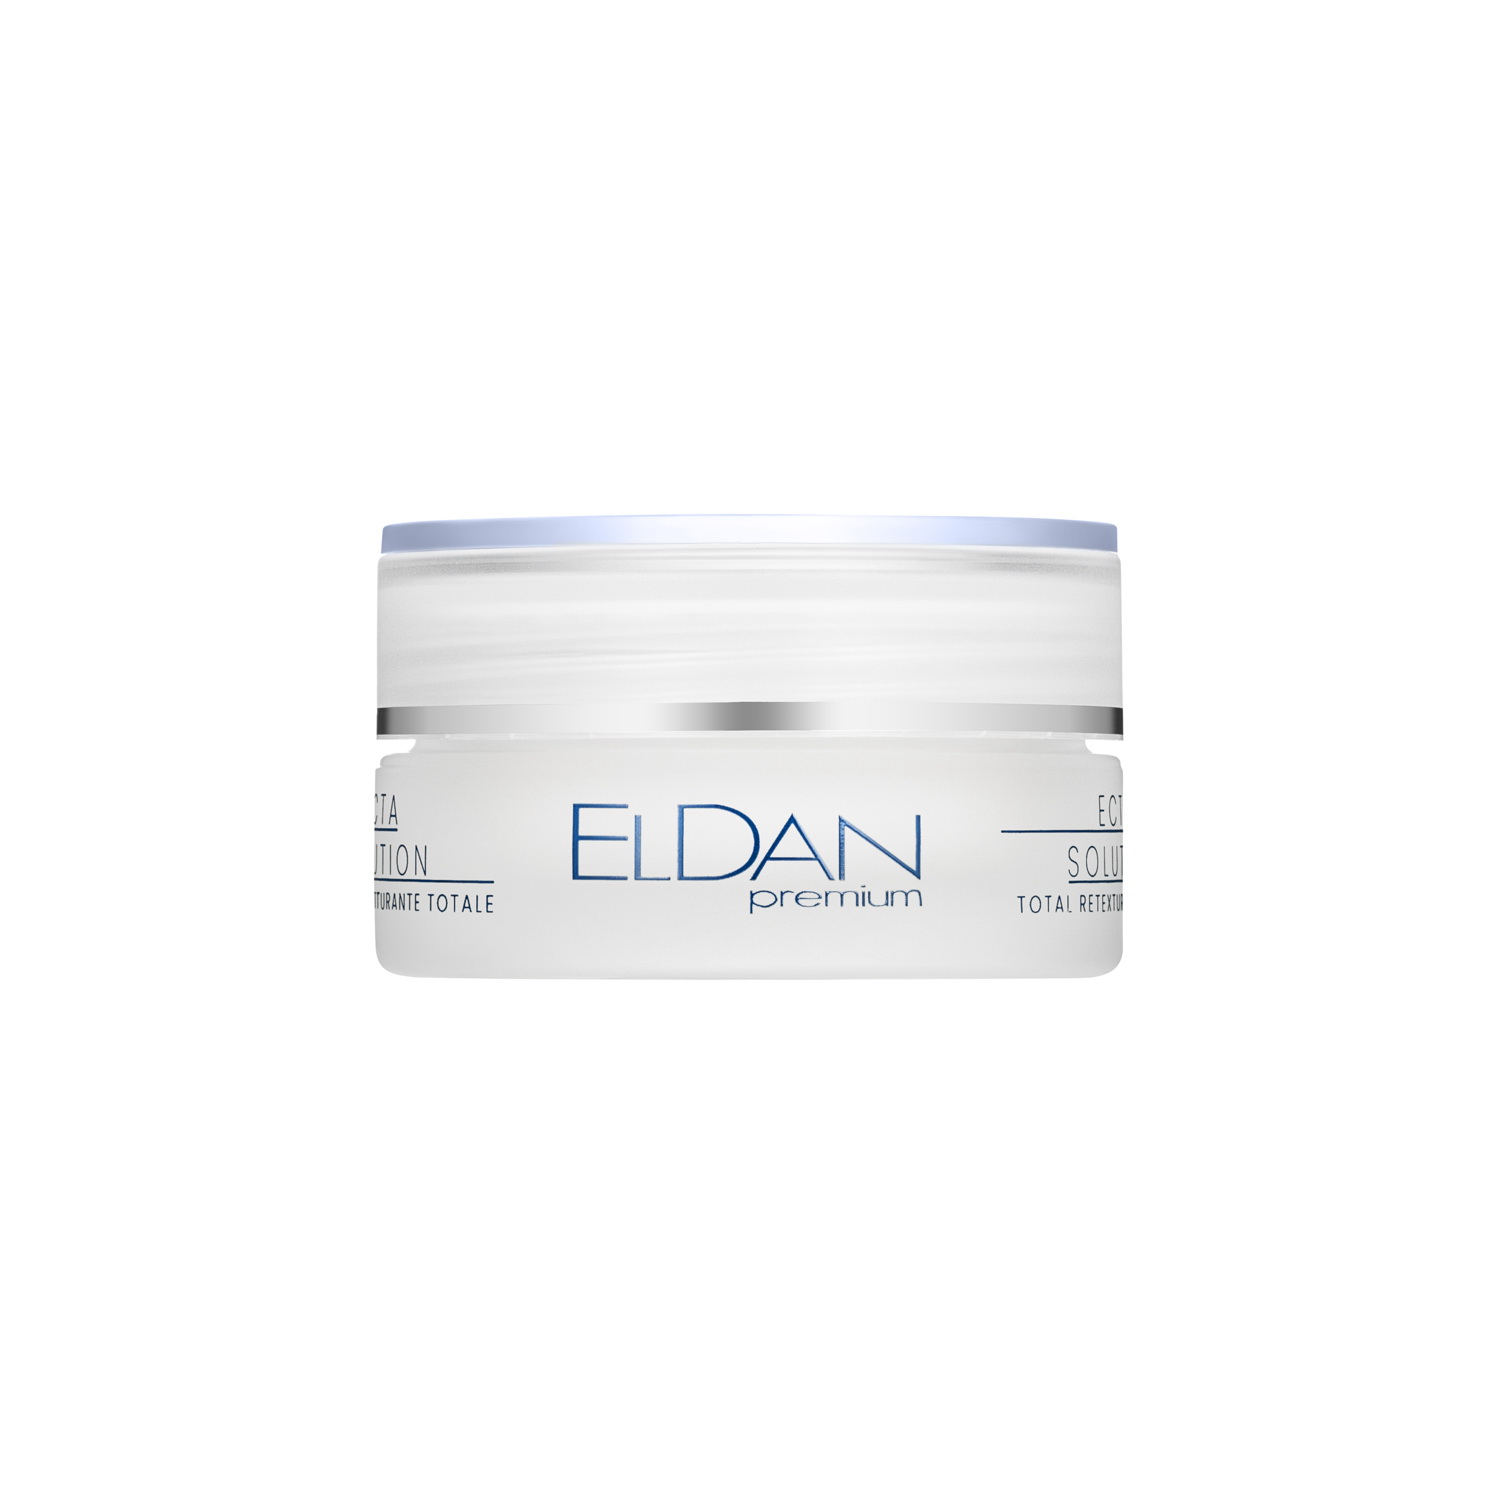 Крем для лица ELDAN Cosmetics Premium ECTA 40+ интенсивный, легкий, 50 мл eldan средство для упругости и объема губ premium 15 мл